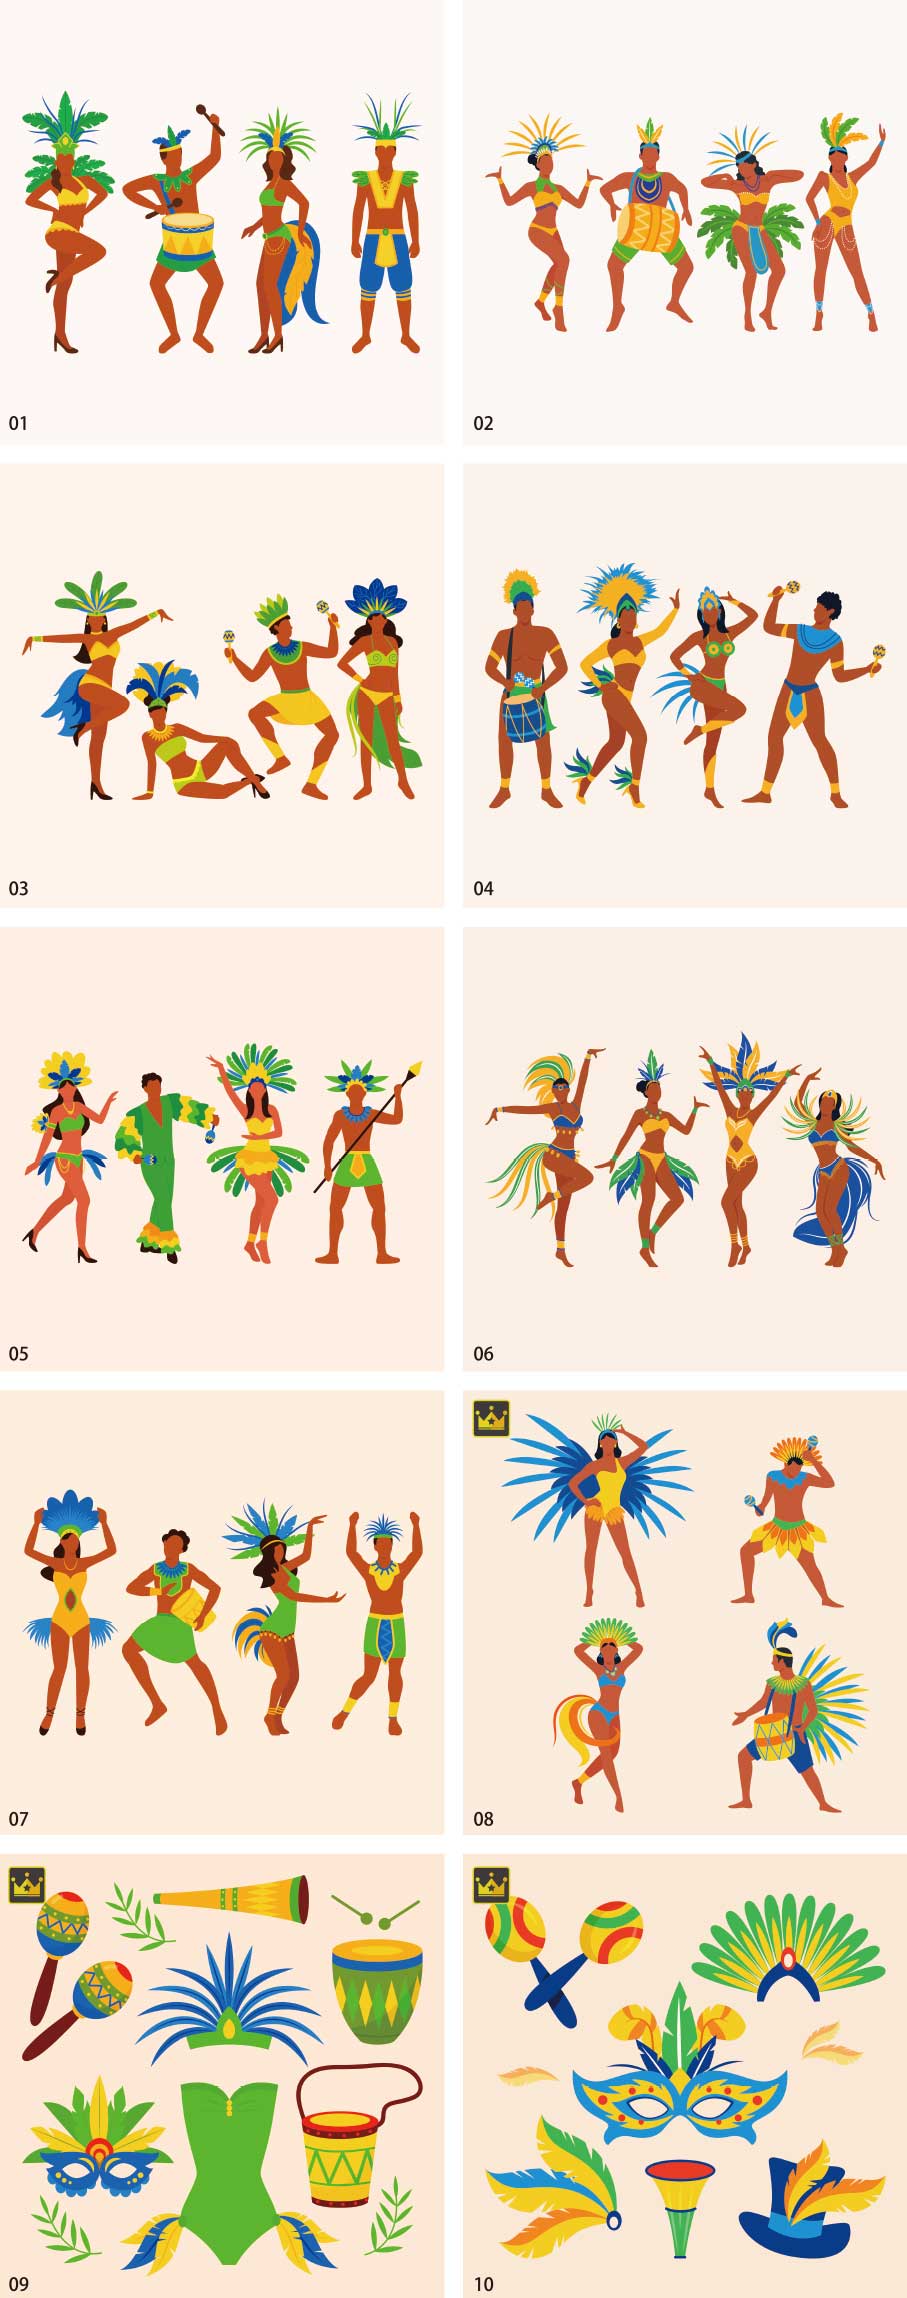 Bộ sưu tập minh họa các vũ công lễ hội Brazil